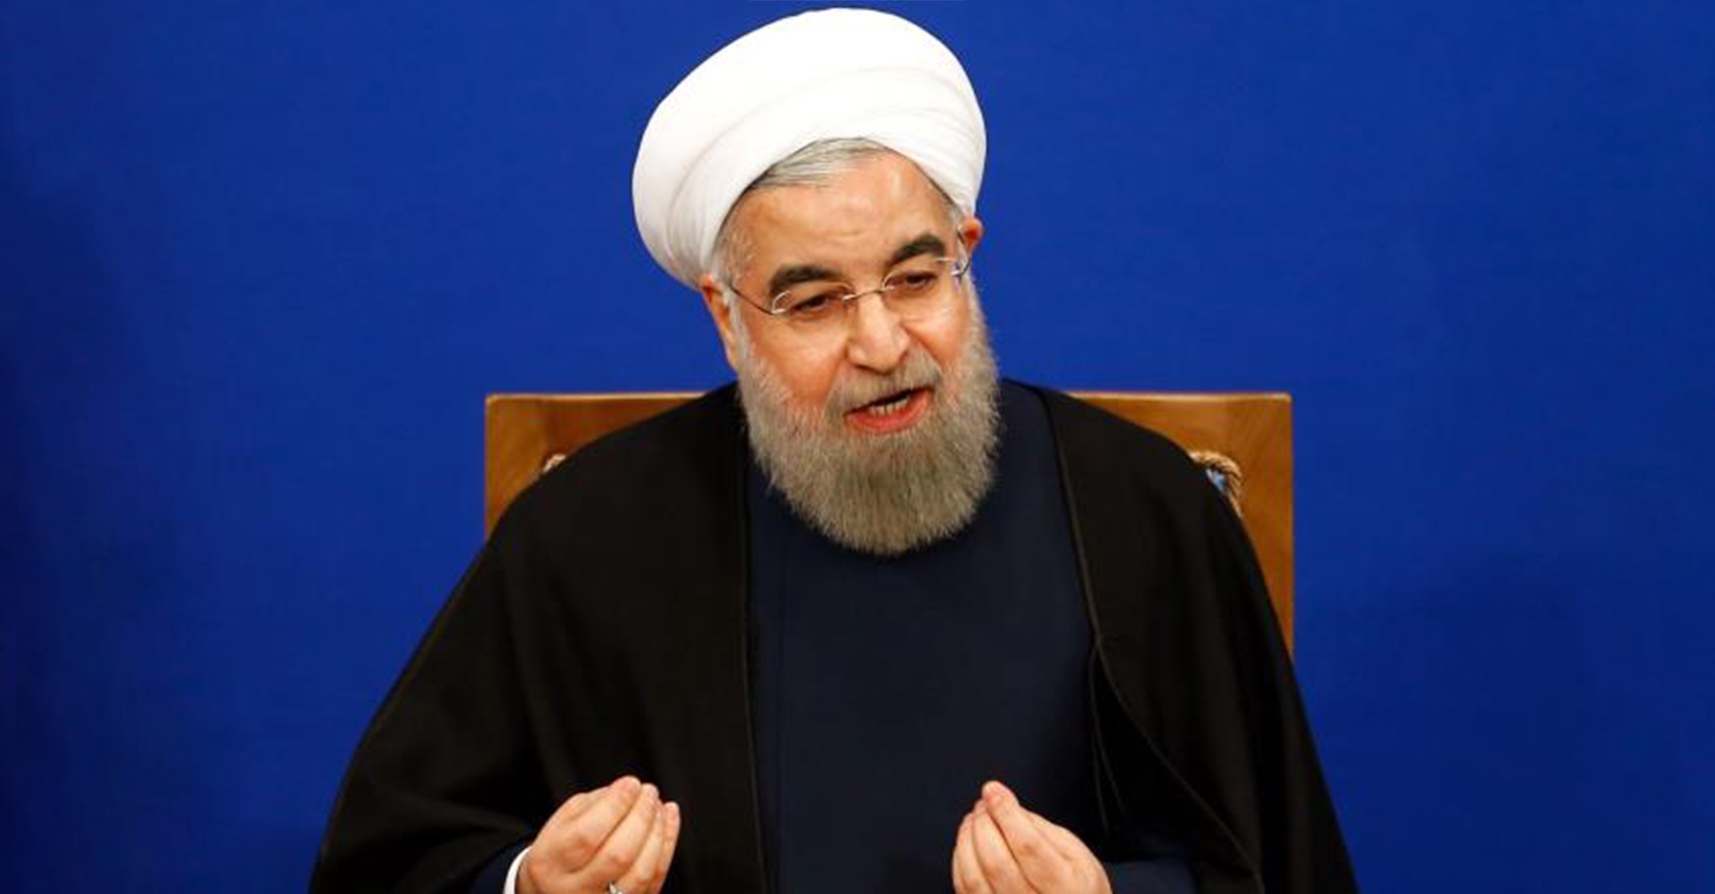 صورة روحاني يدعو شرطة الأخلاق للرفق بالقوارير عند مصادرة حرياتهن الشخصية